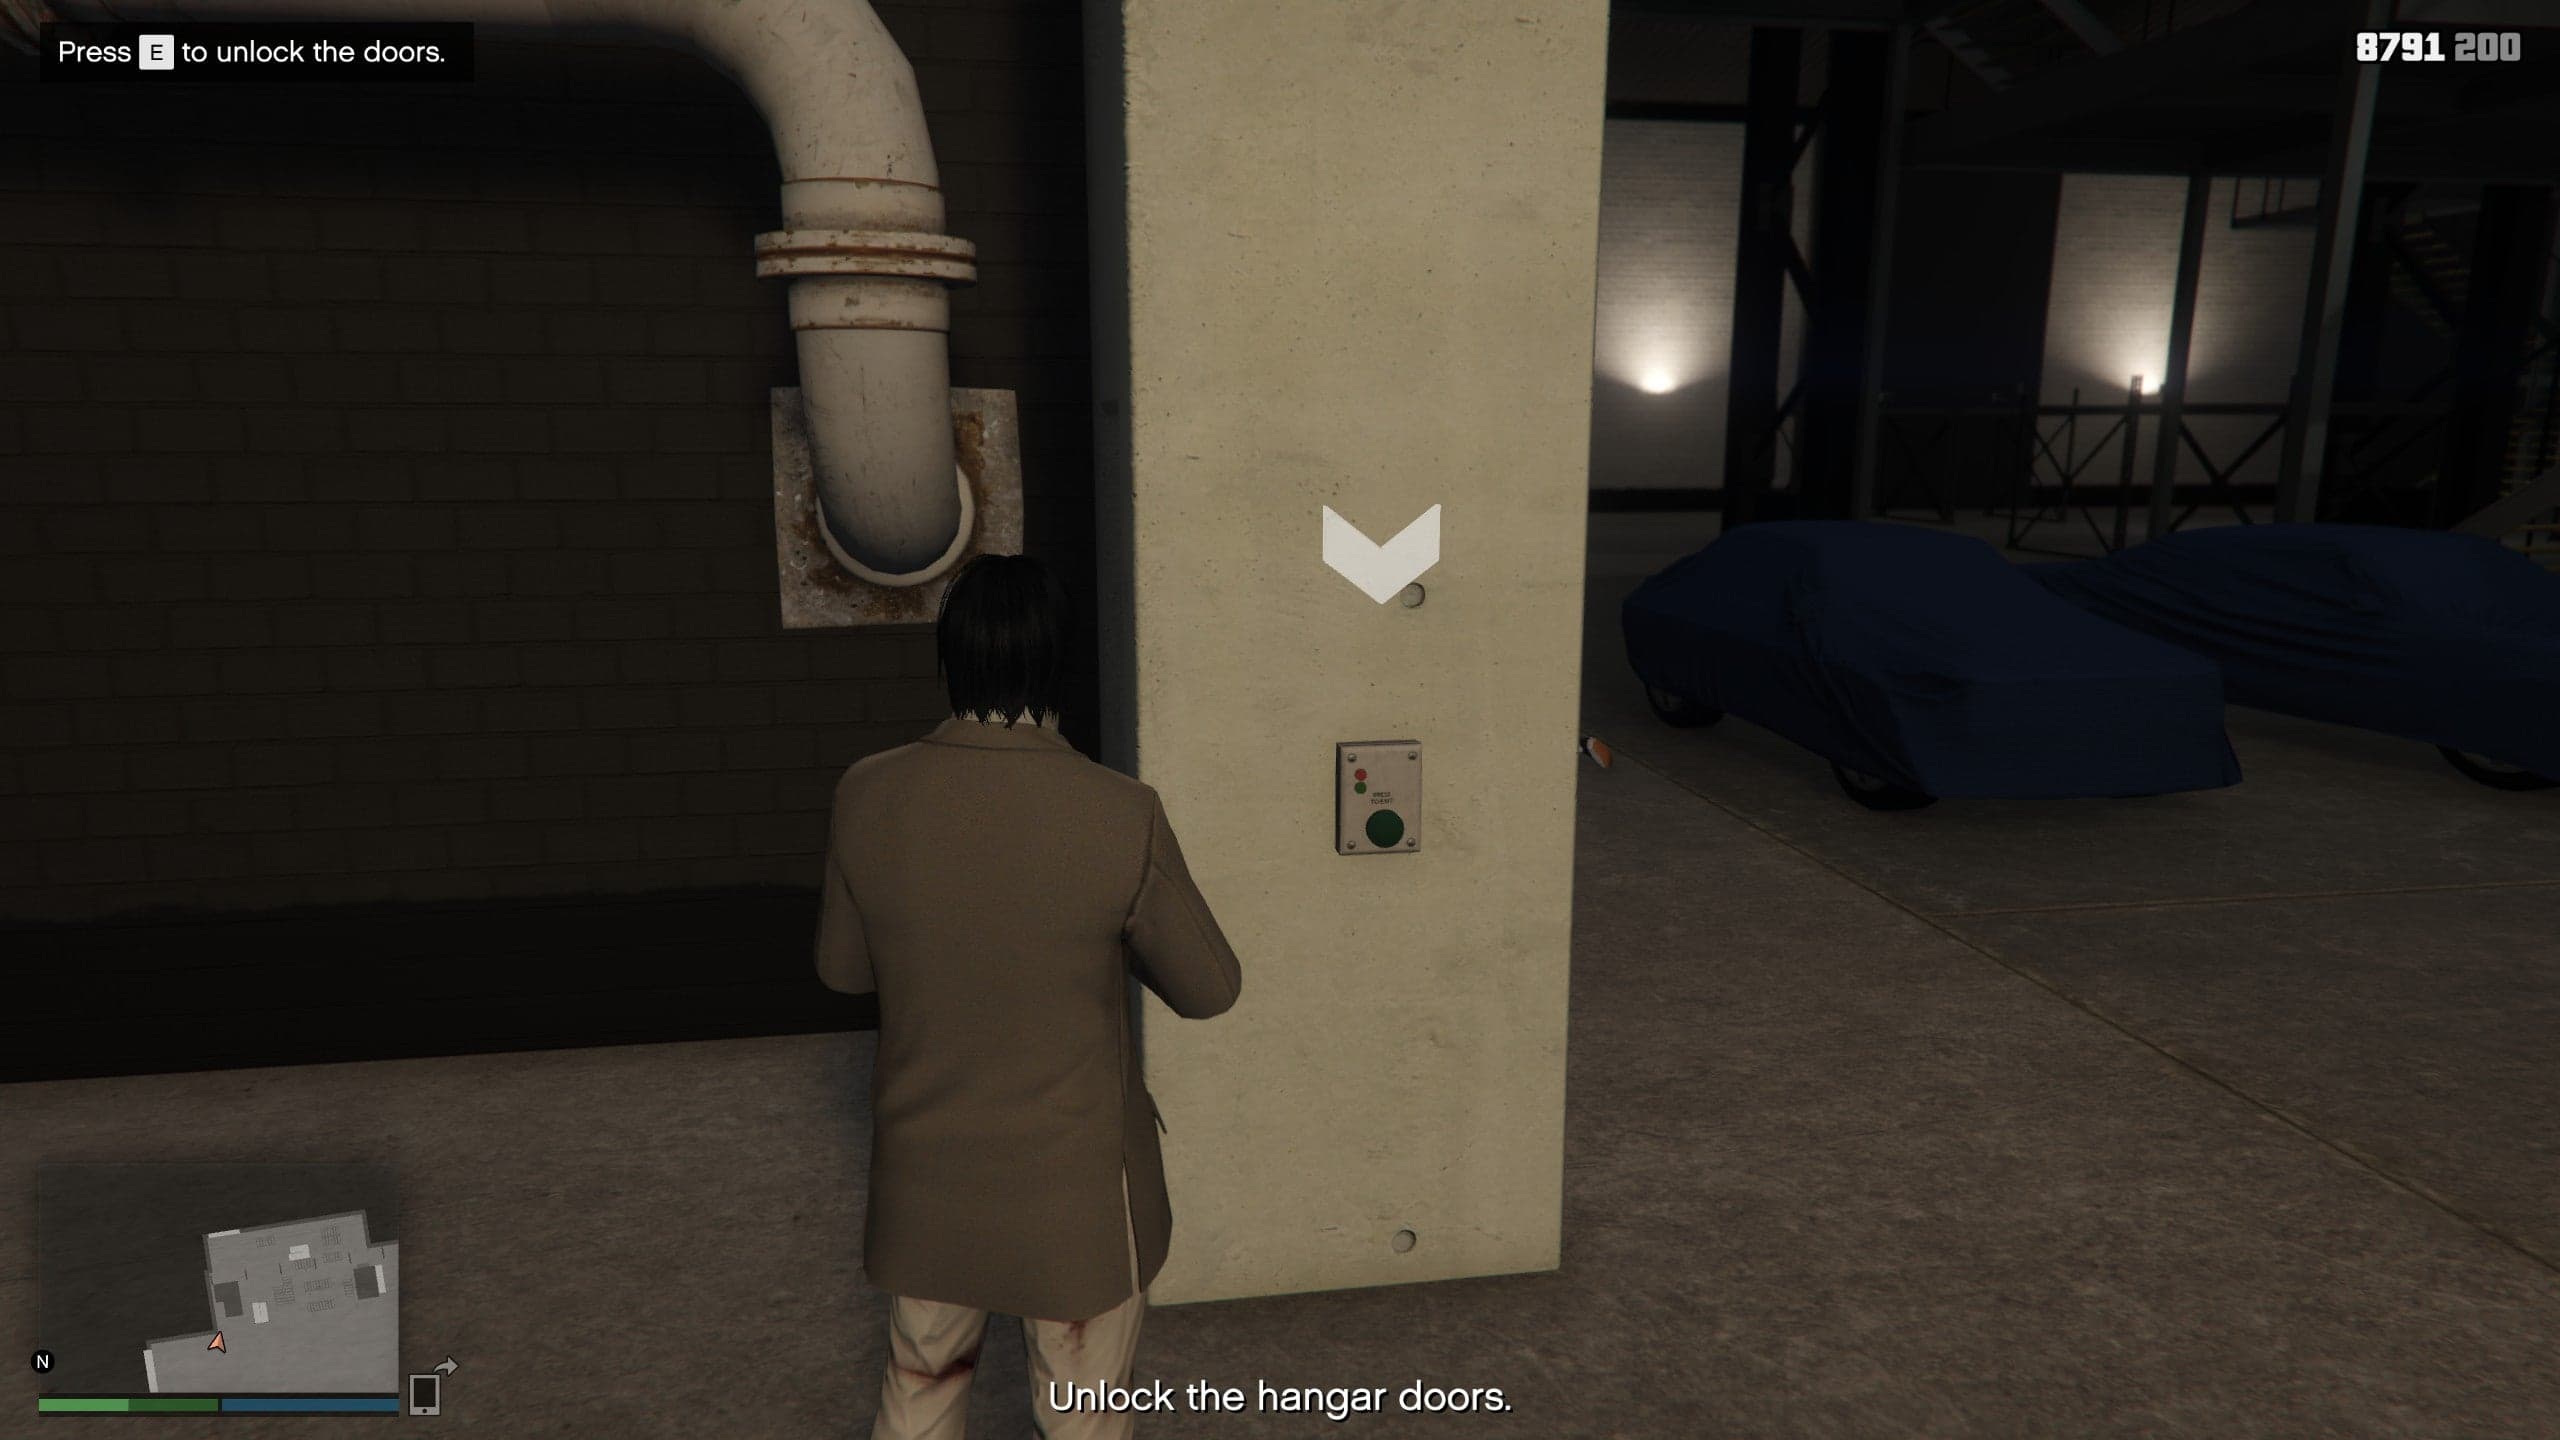 How to Unlock Hangar doors in GTA Online